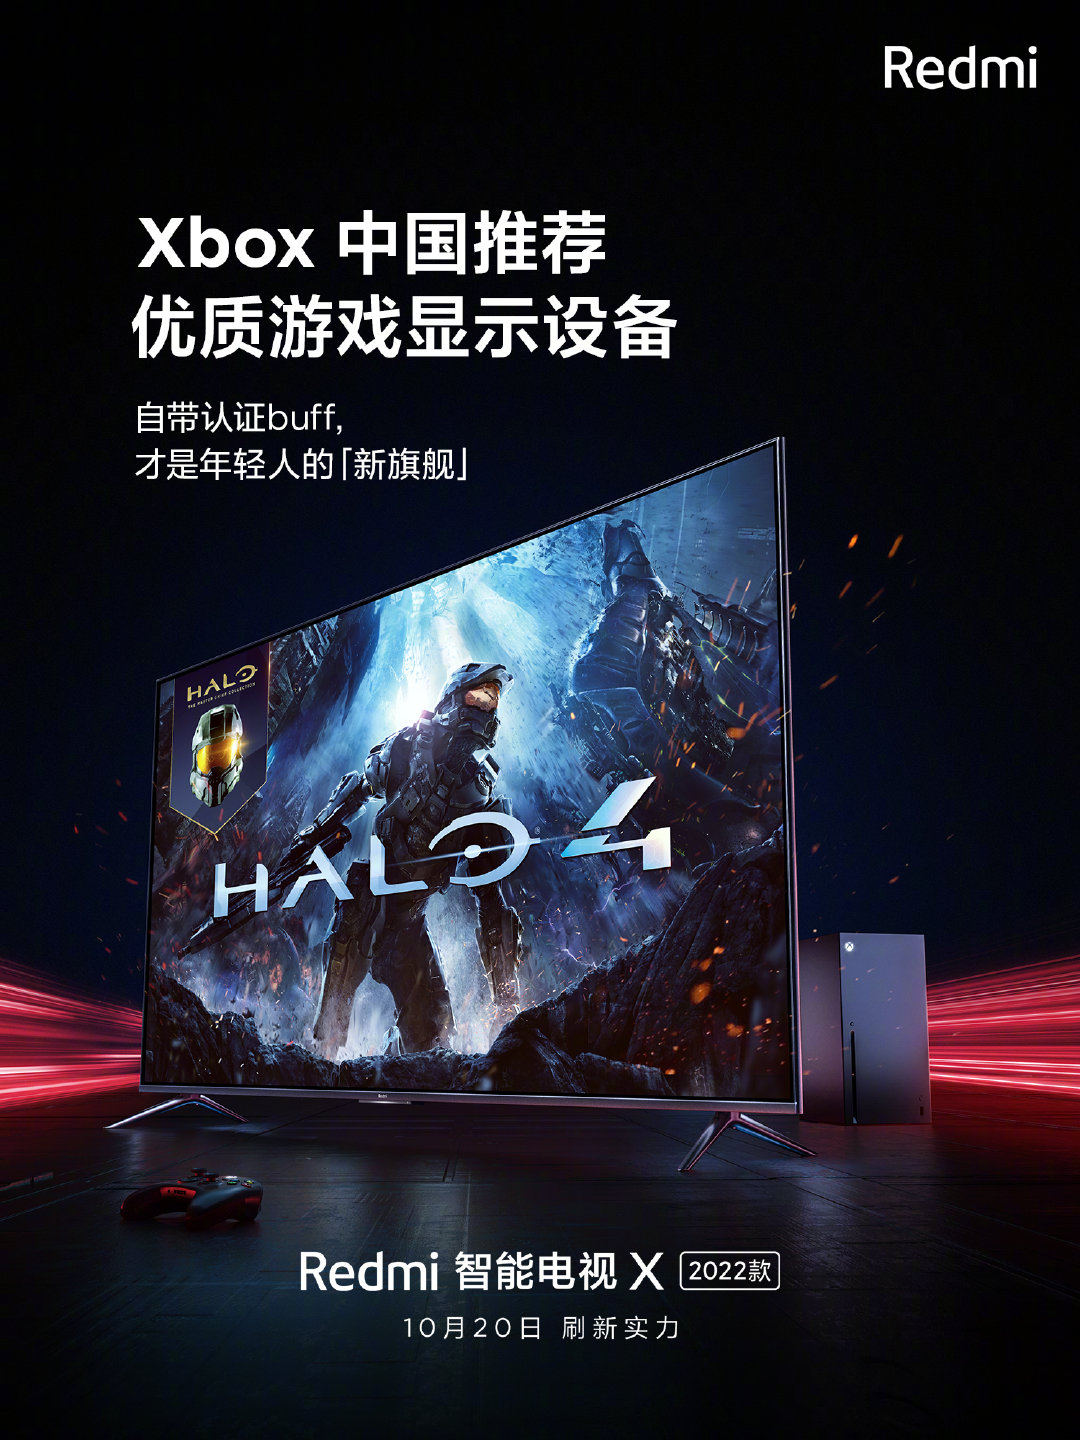 小米2022款Redmi智能电视X明日正式发布 获Xbox中国推荐优质设备